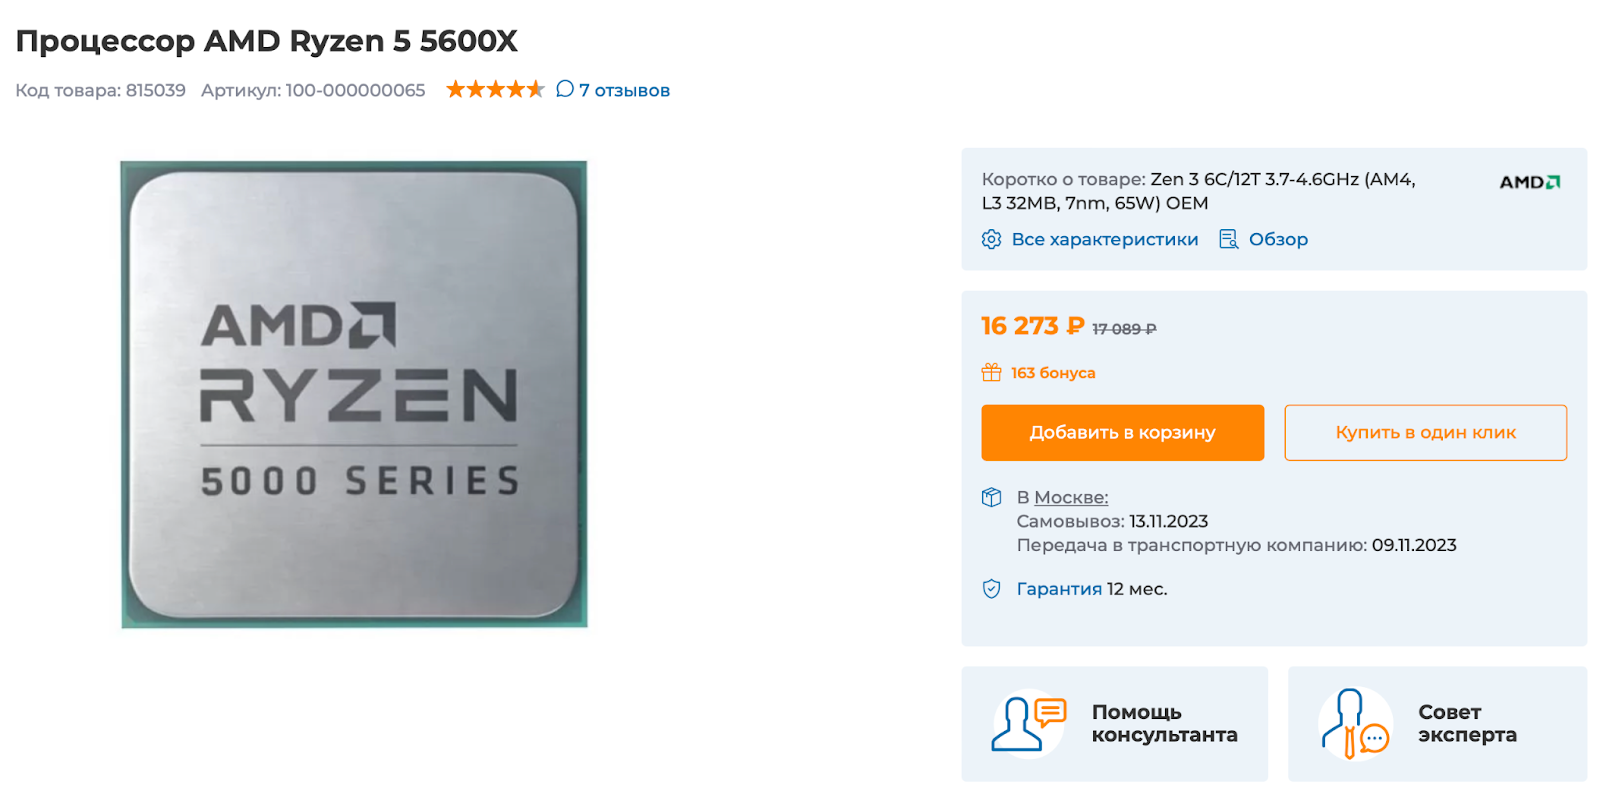 AMD Ryzen 5 5600X хорош и относительно недорог